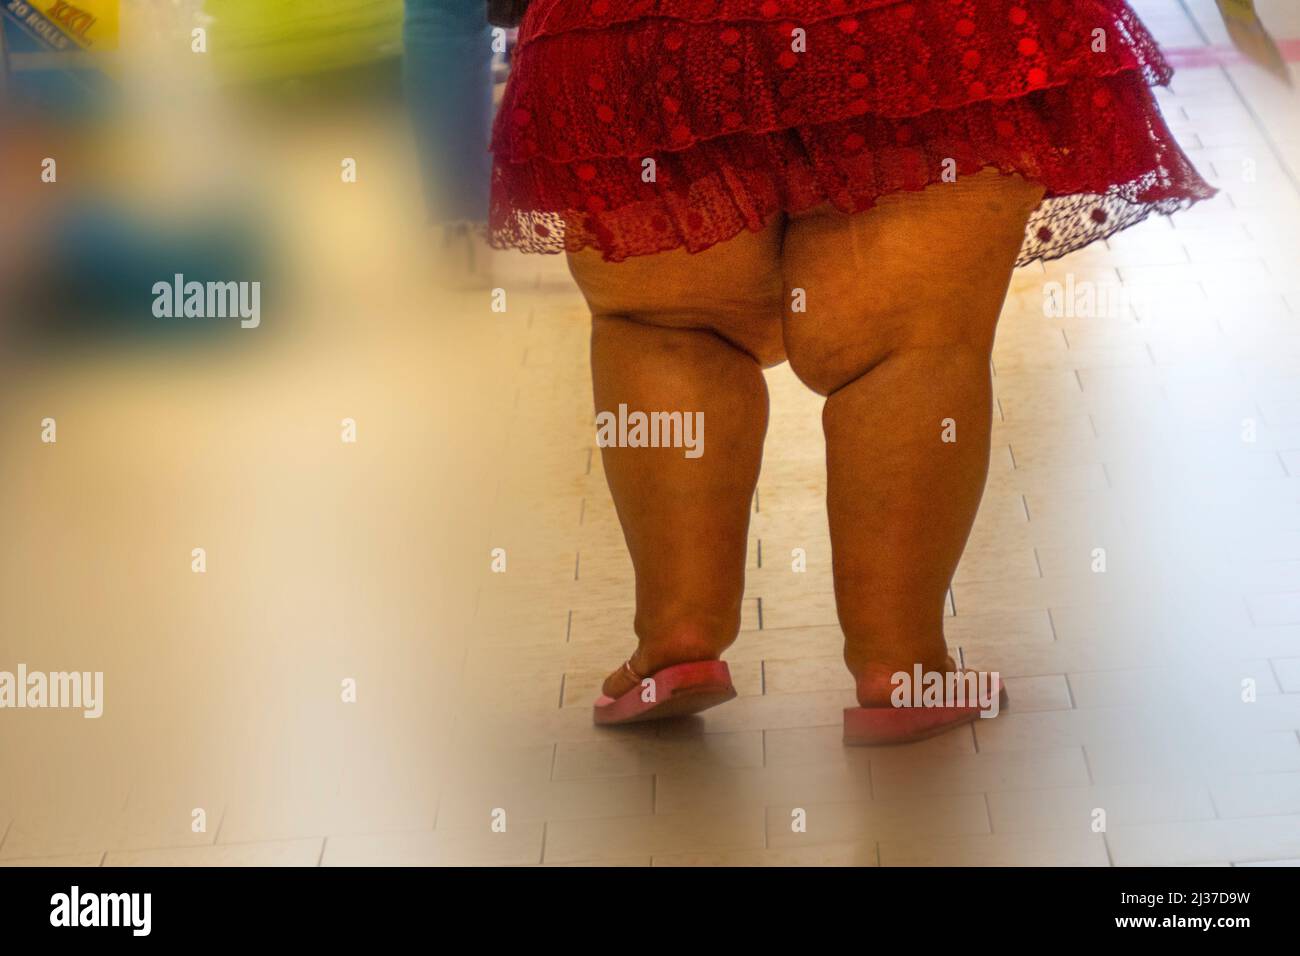 Obesidad Foto de stock